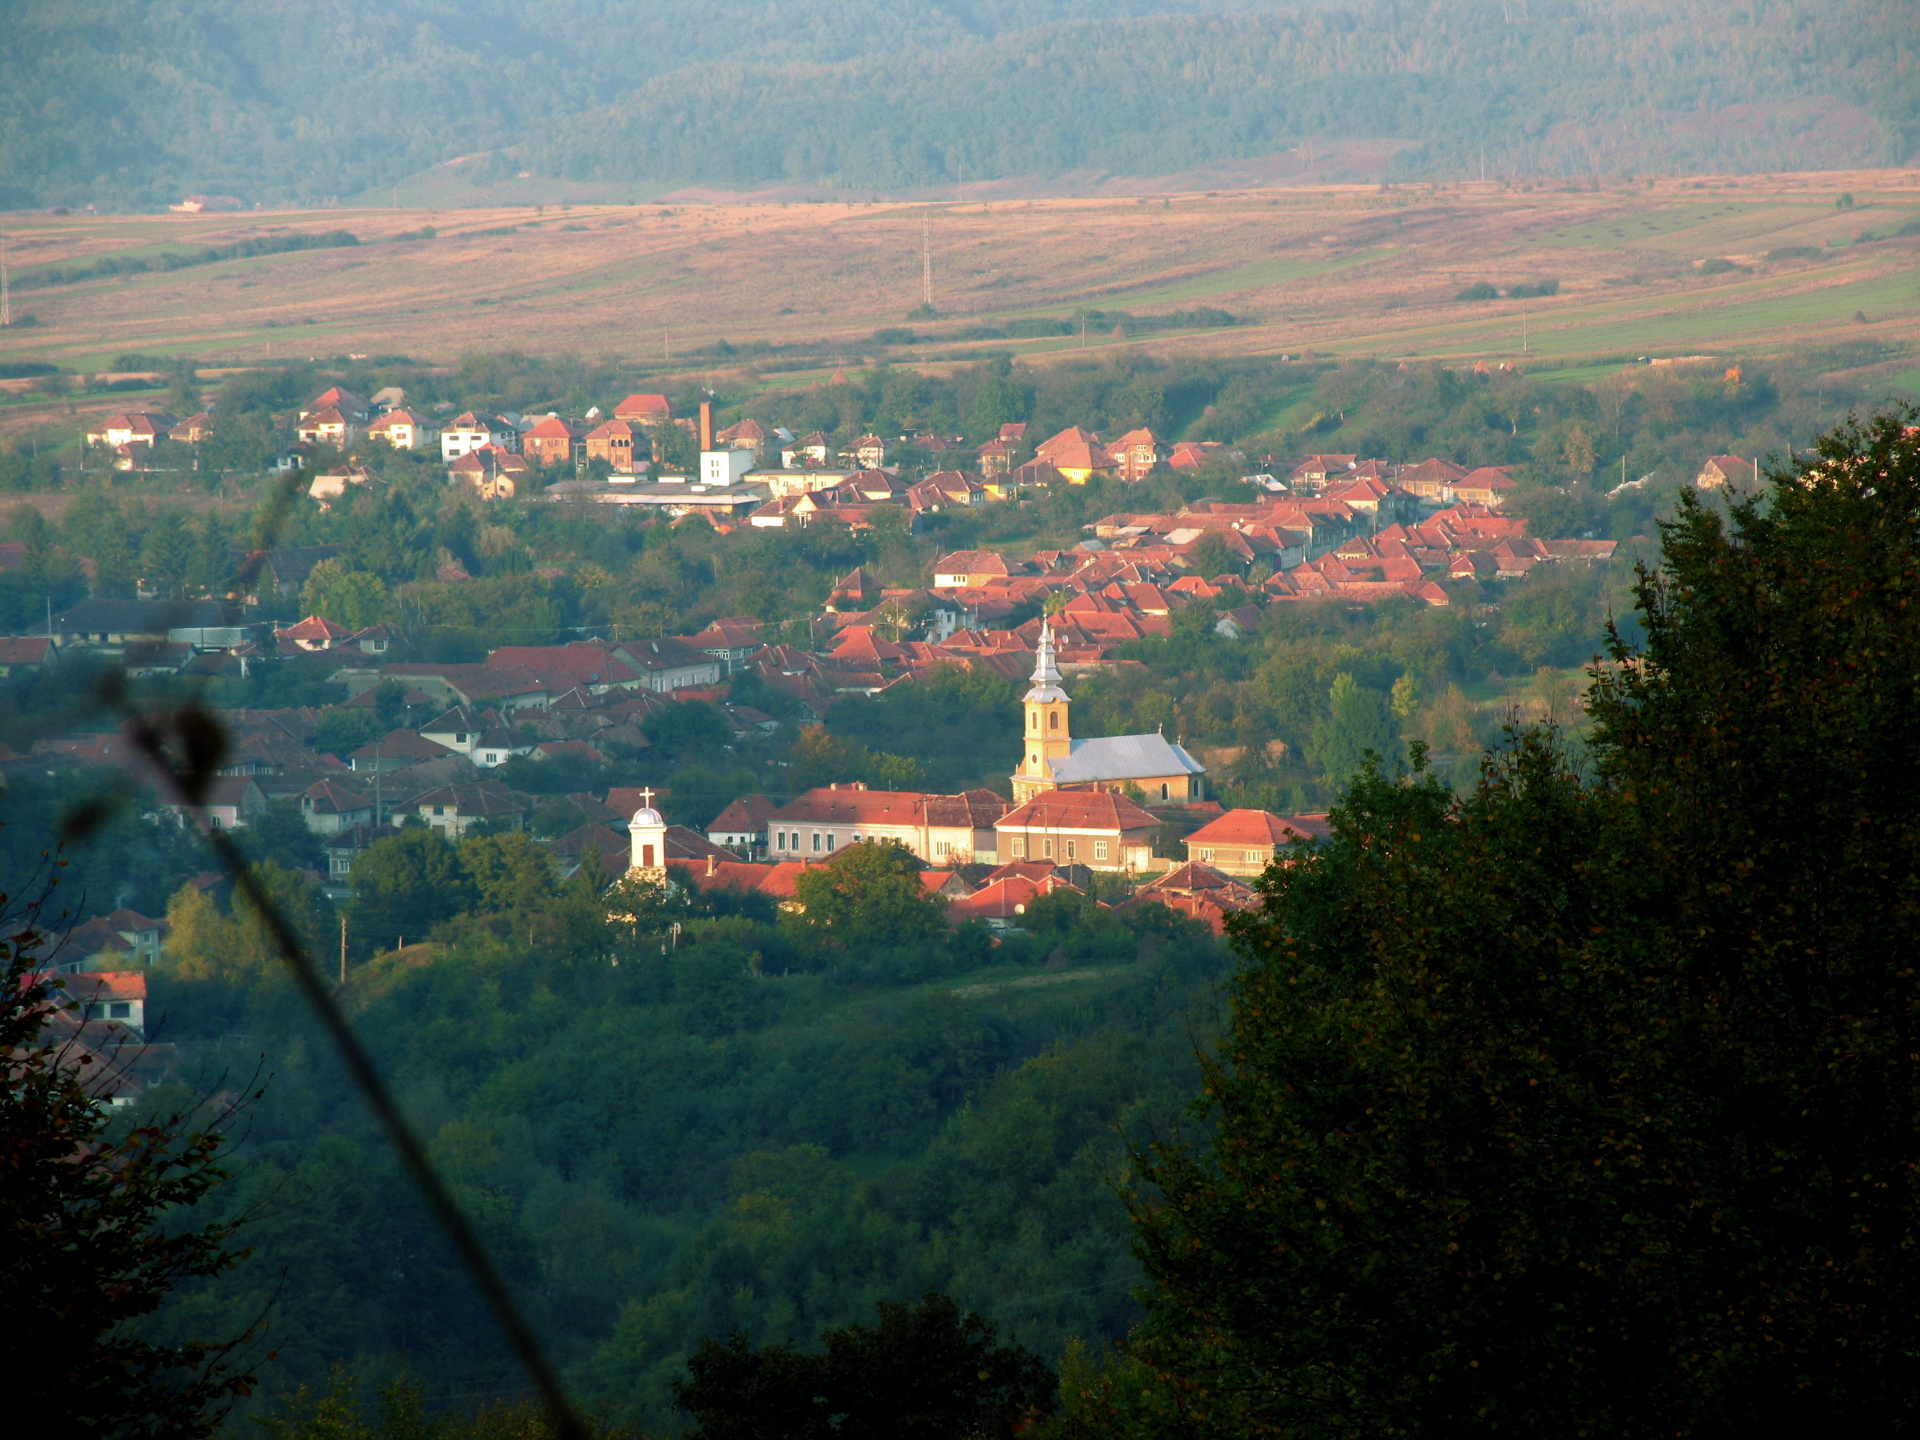 Kleinstadt Vașcău im Deutschen Siedlungsgebiet Apuseni-Gebirge in Rumänien